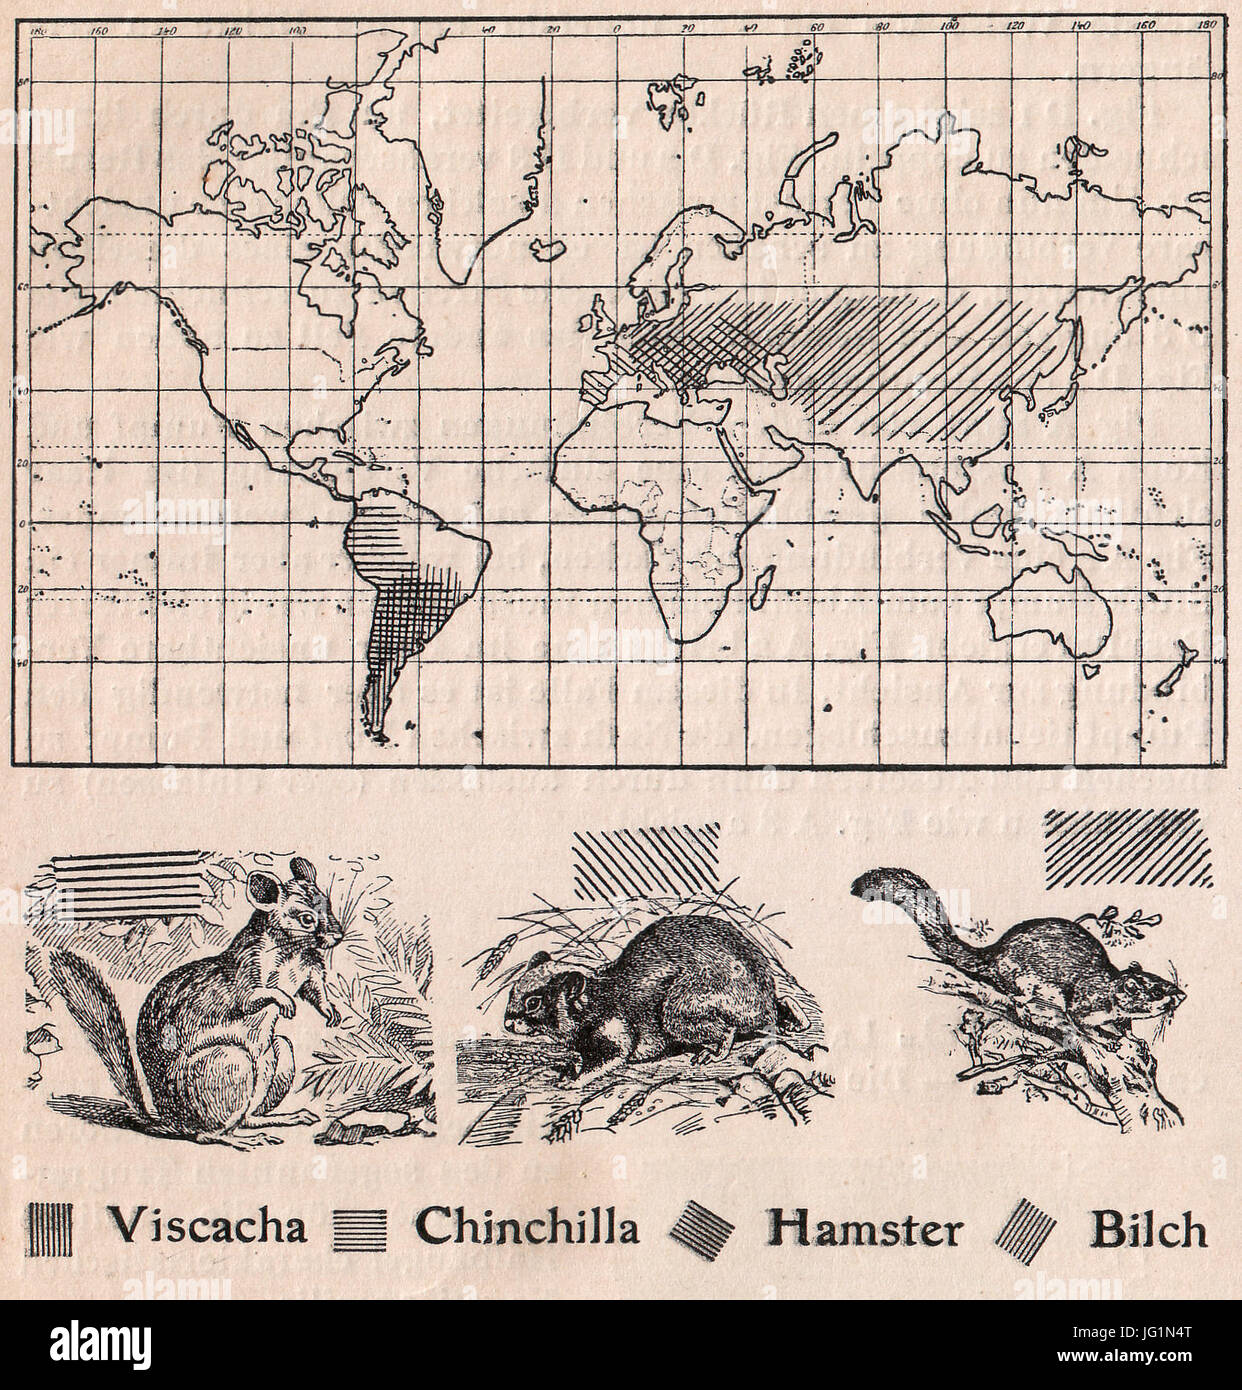 Das Kürschner-Handwerk, II. Auflage 3. Teil, S. 60, Weltkarte der Verbreitung Viscacha, Chinchilla, criceto und Bilch (1910) Foto Stock